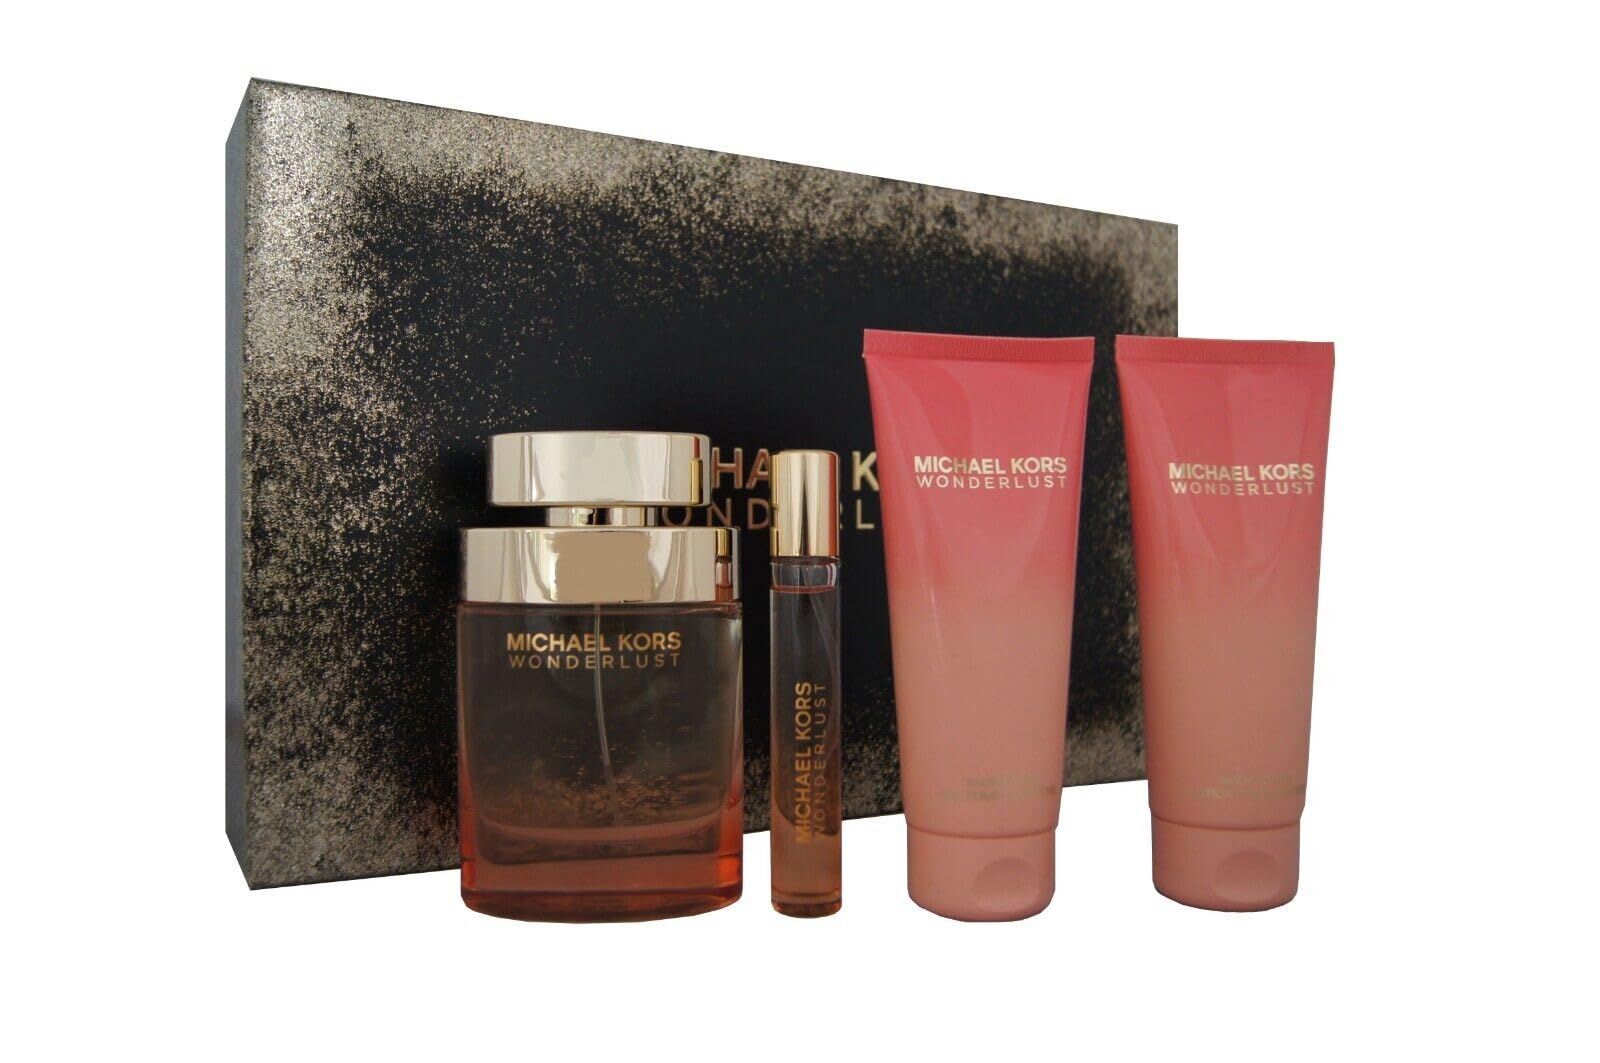 Michael Kors Wonderlust Perfume Gift Set for Women